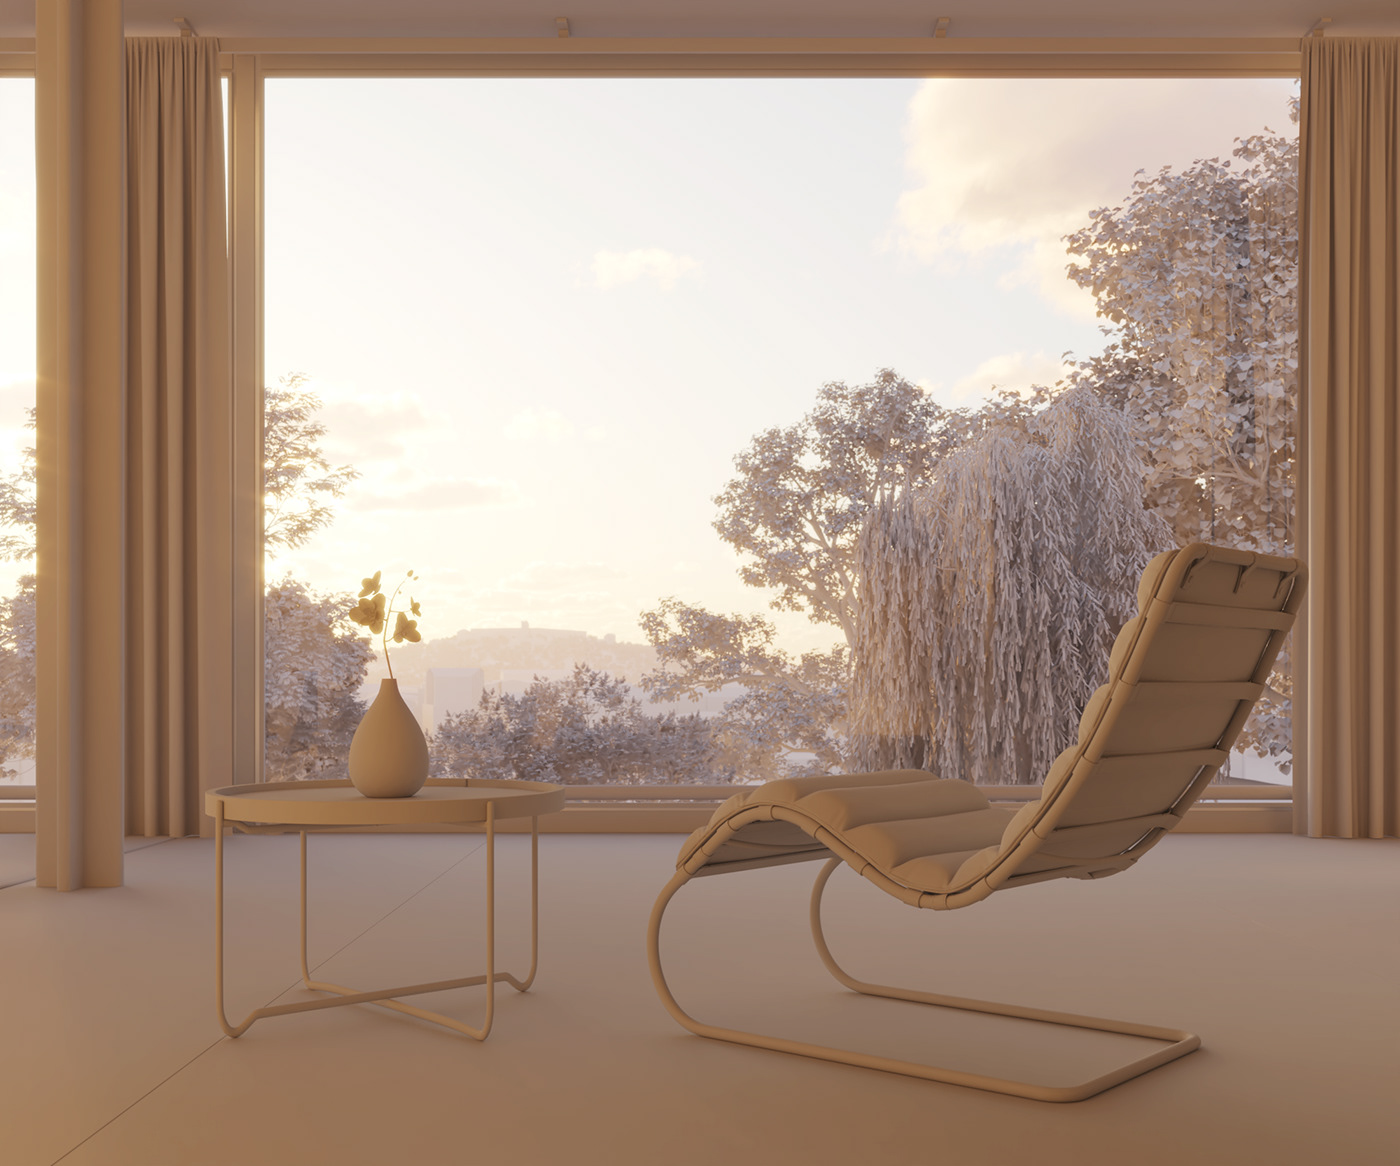 3ds max vray photoshop 3D Rendering mies van der rohe interior design  visualization architecture arhcviz